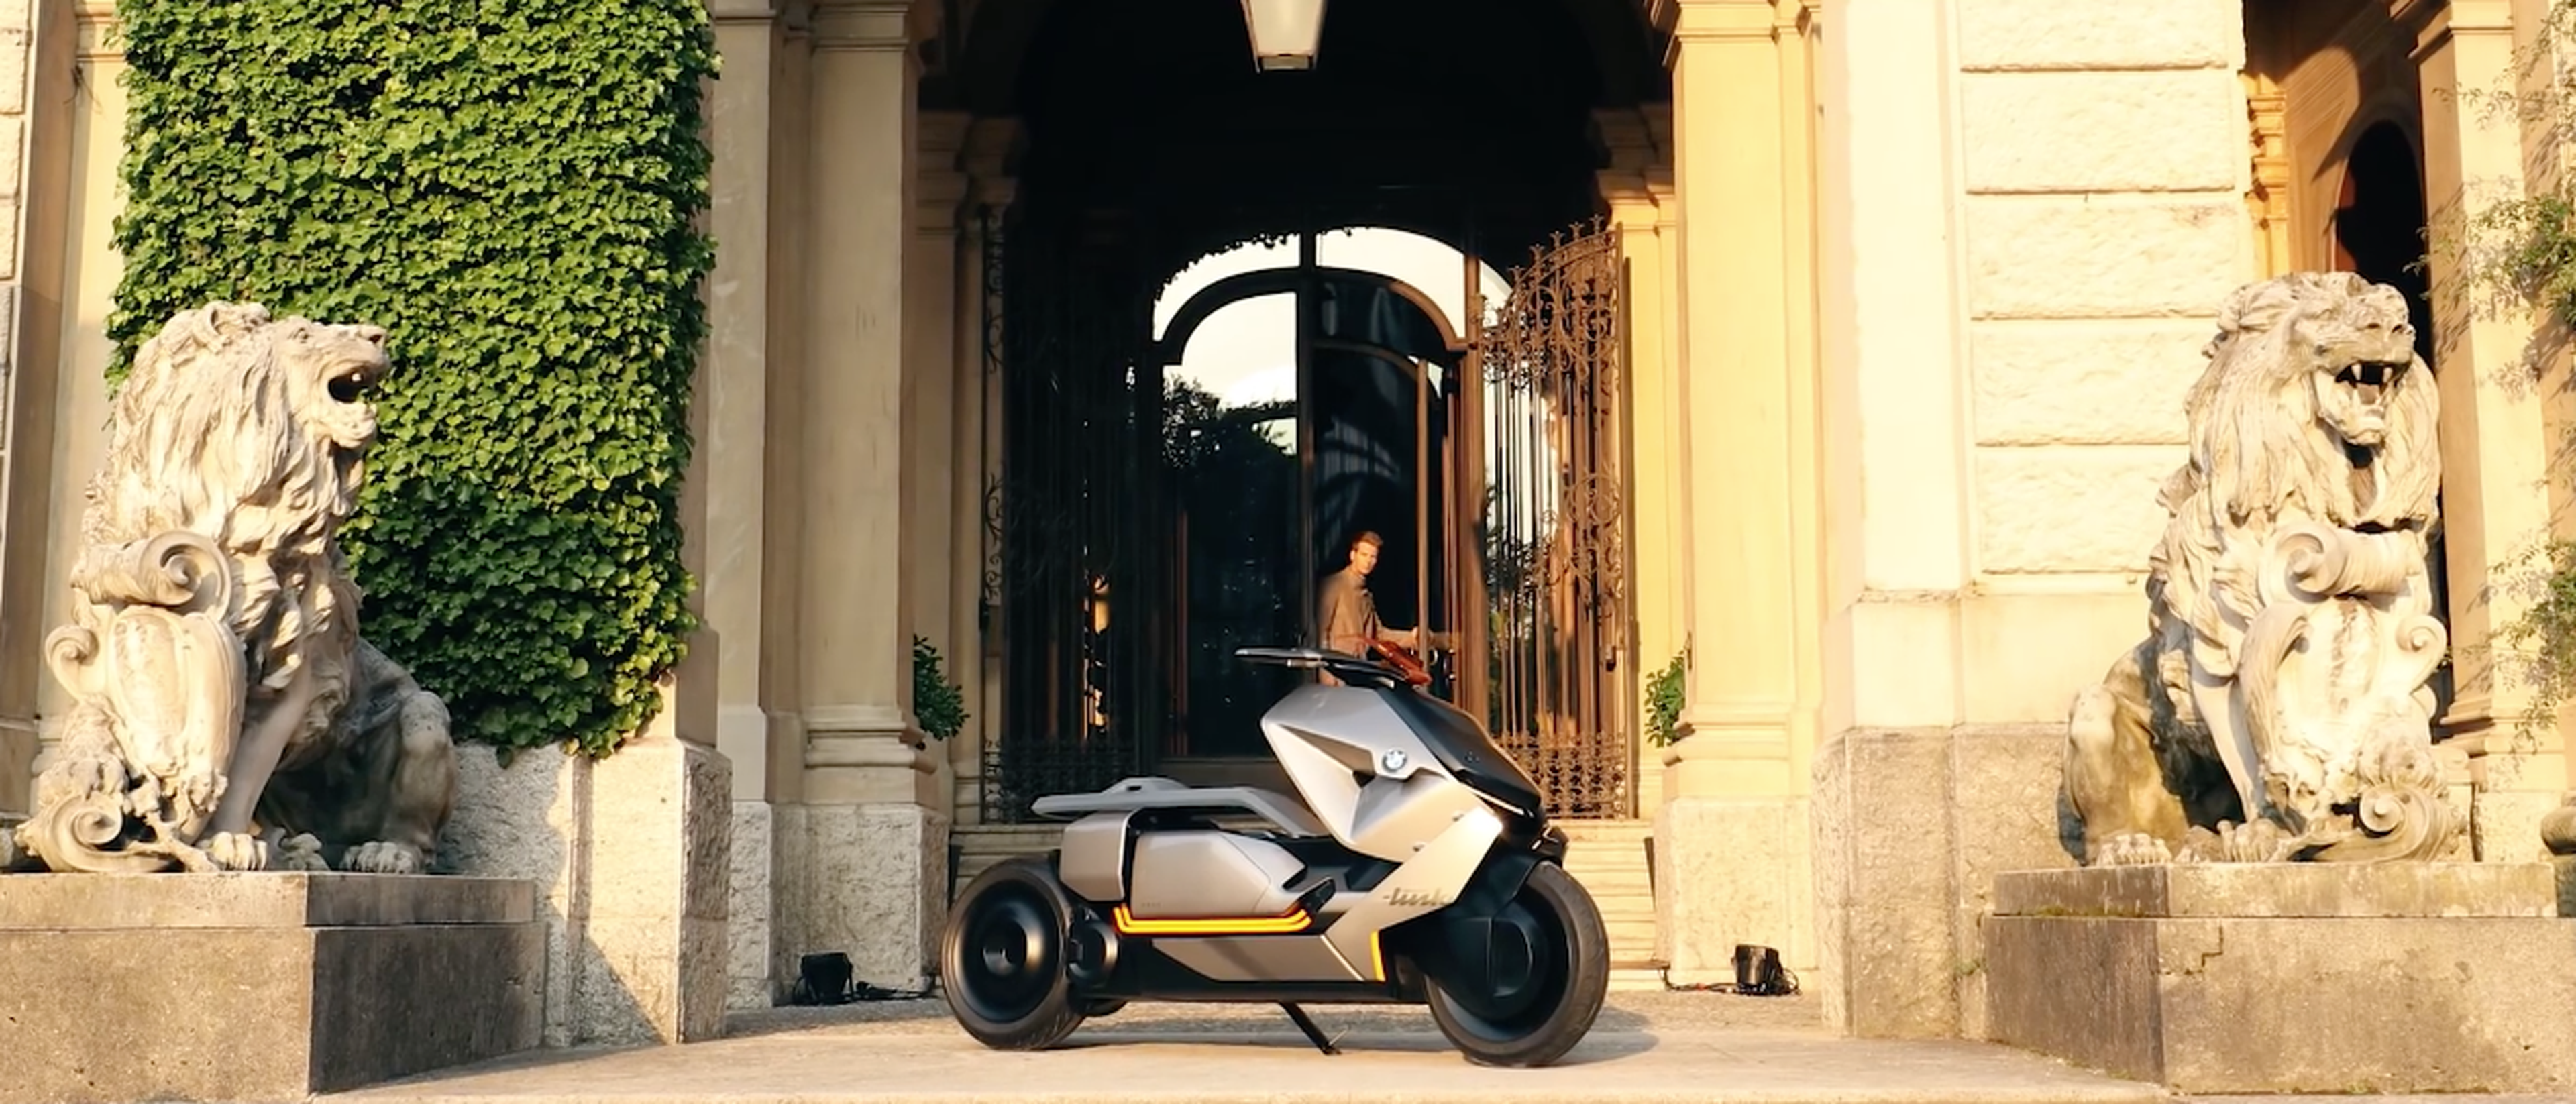 VÍDEO: Fea es, pero esta moto va hasta arriba de tecnología